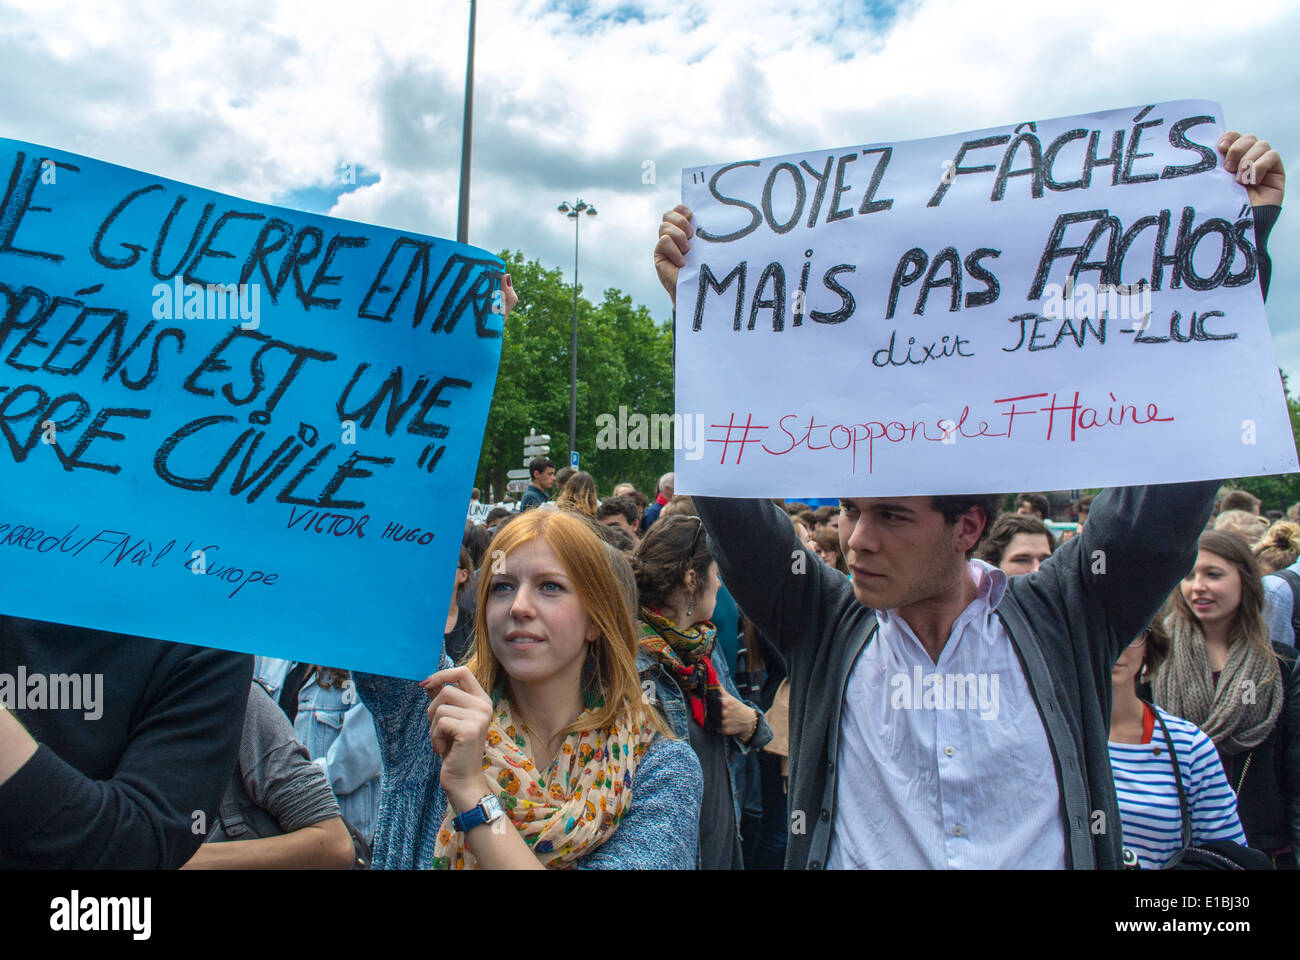 Paris, France, manifestations contre l'extrême droite manifestation du groupe des adolescents protestent contre les étudiants, tenant une affiche de protestation française, jeune adolescente française Banque D'Images